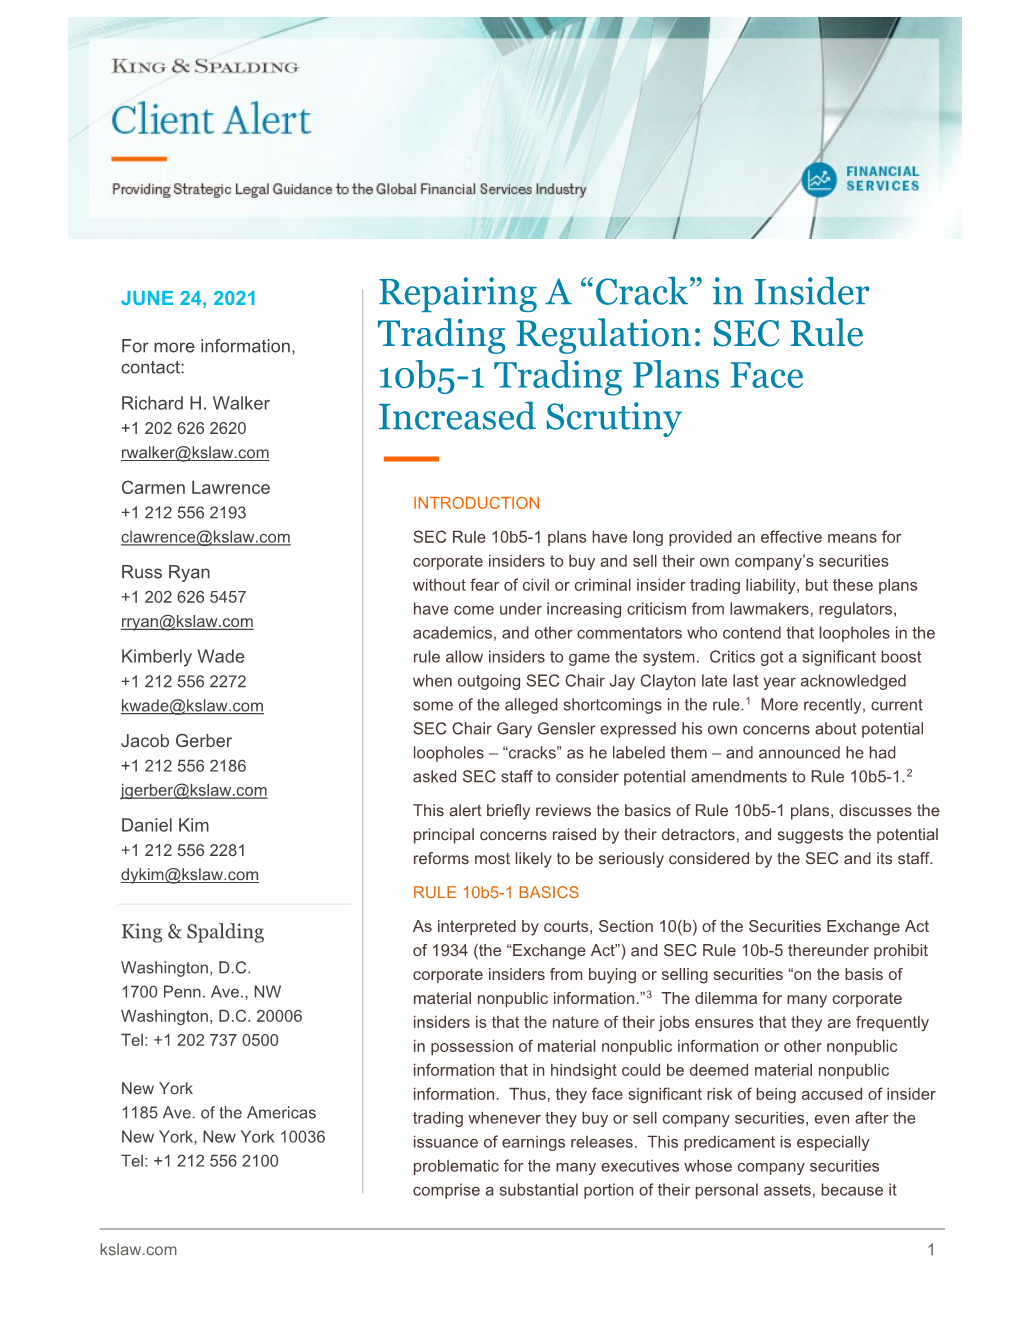 In Insider Trading Regulation